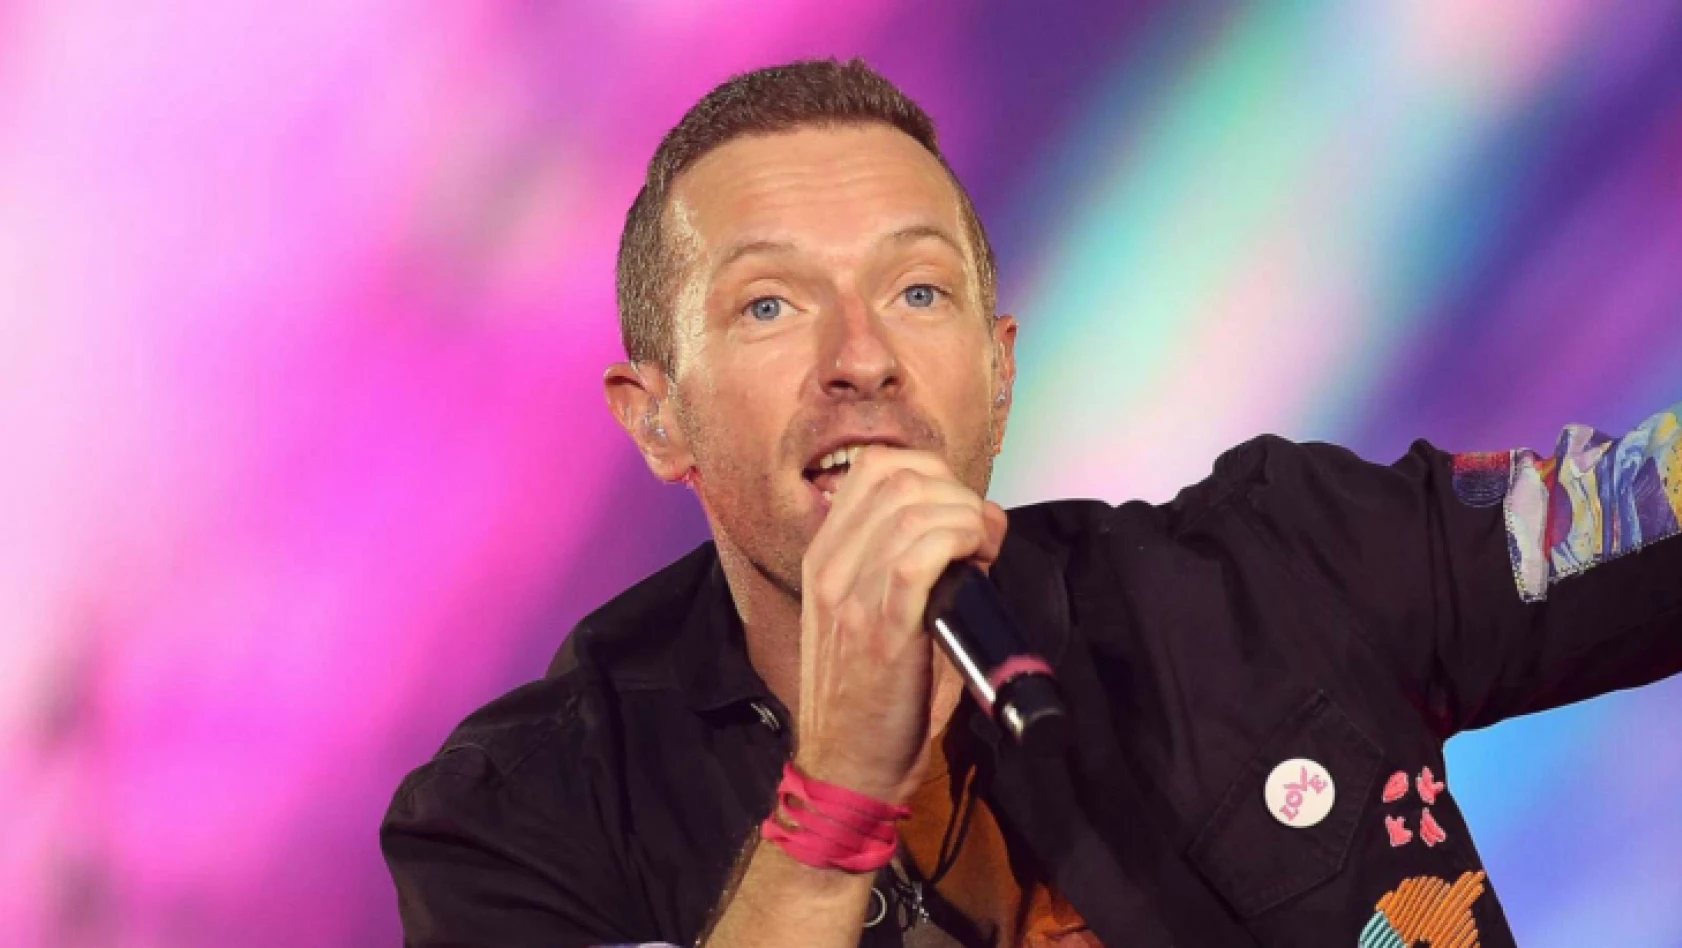 Coldplay, solistleri Chris Martin'in geçirdiği ciddi hastalığı açıkladı